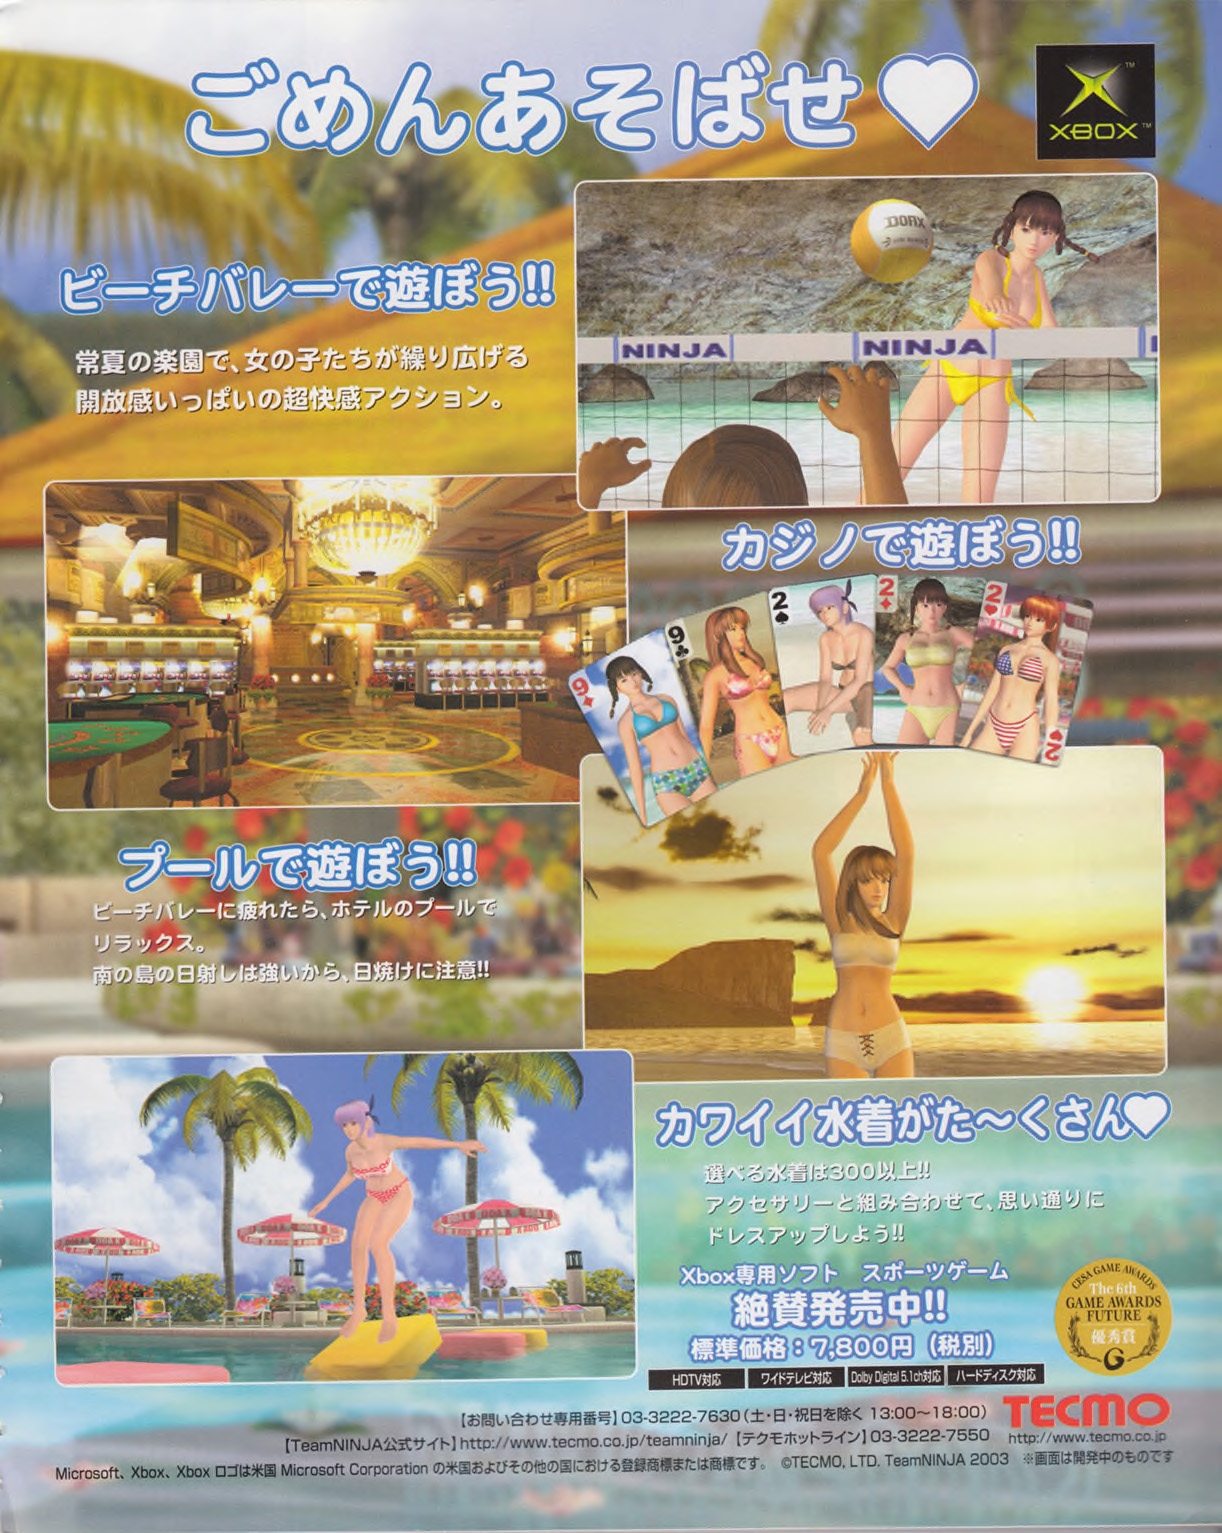 Famitsu_Xbox_2003-04_jp2 4